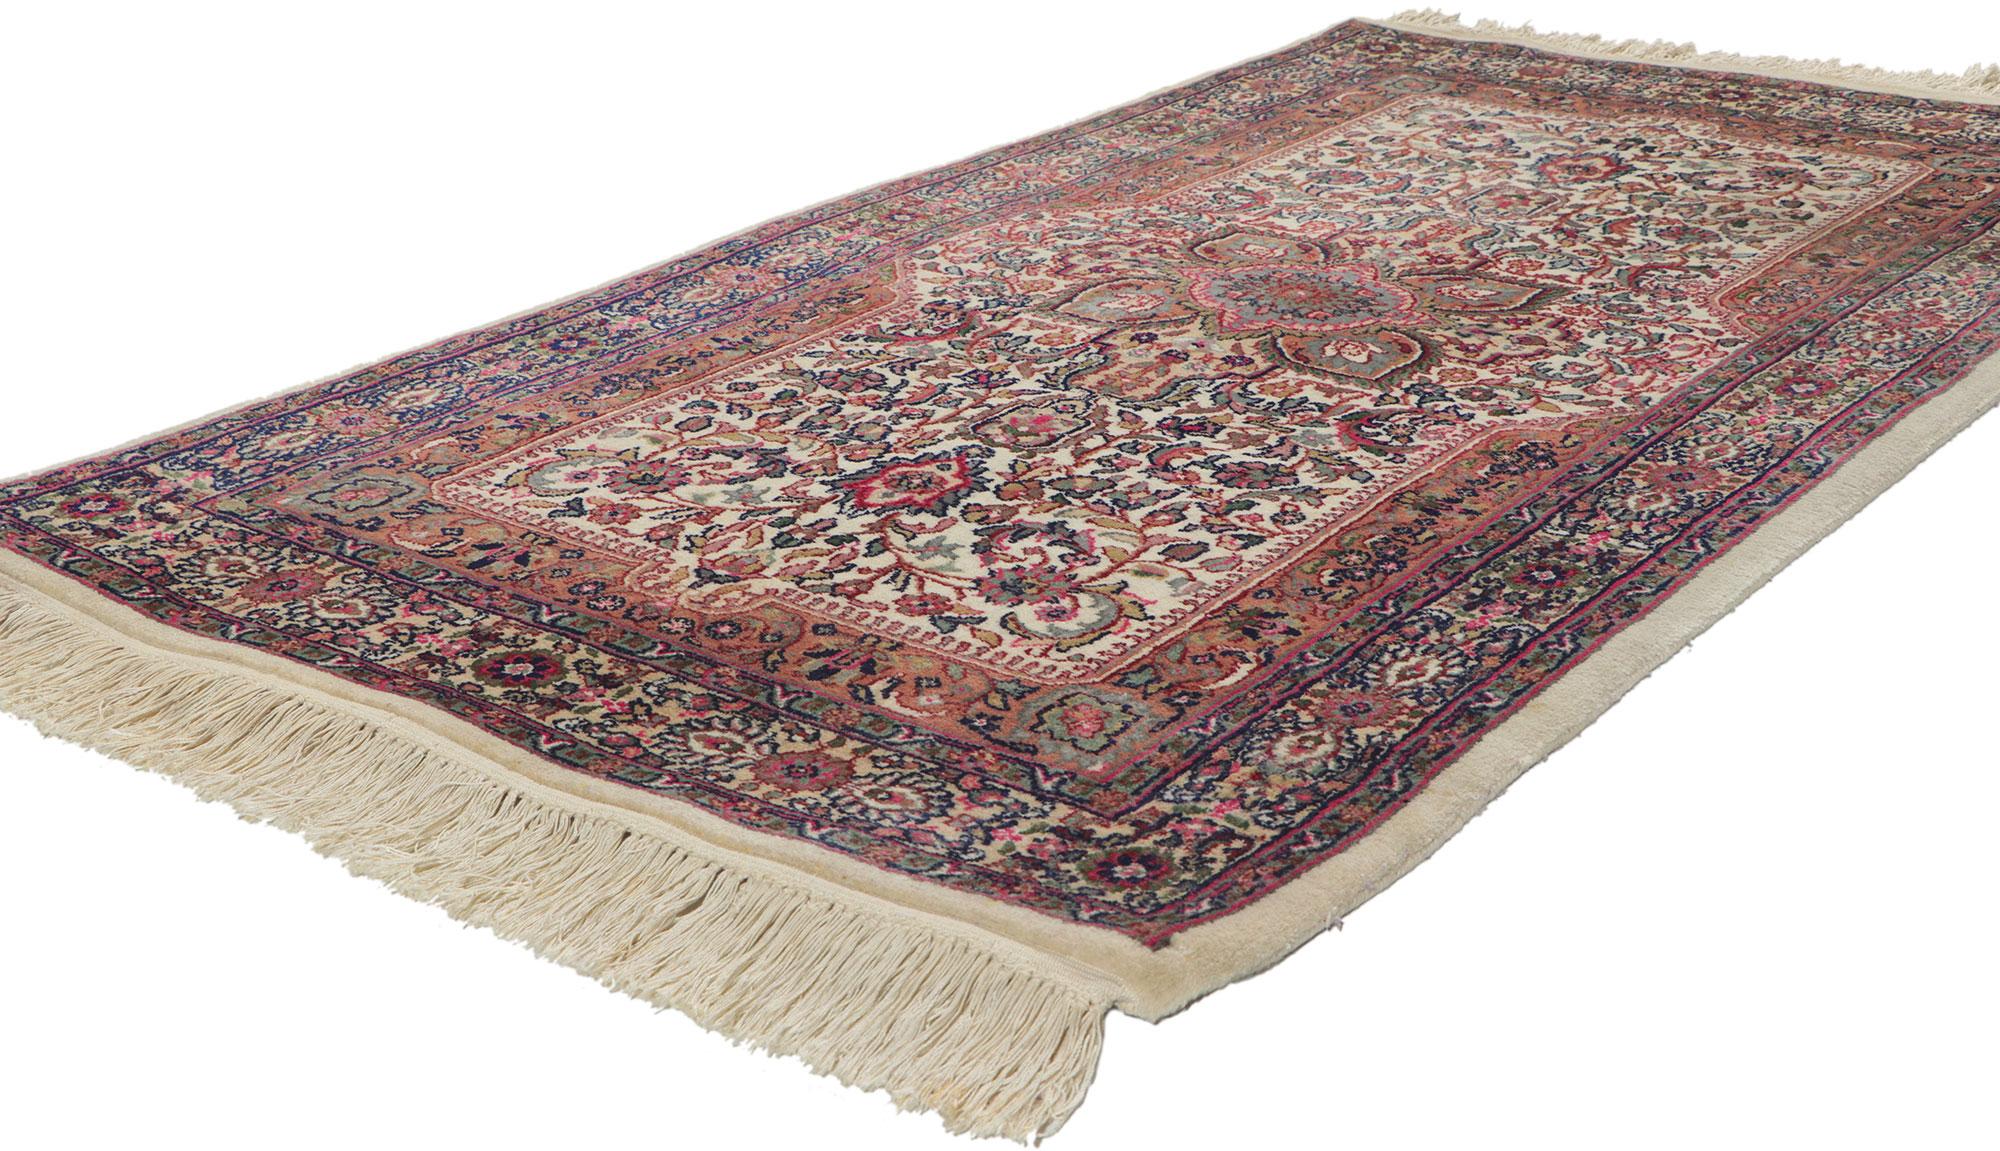 78300 Vintage Chinese Kerman Rug, 03'02 x 05'04.
Dieser handgeknüpfte chinesische Kerman-Teppich aus Wolle im viktorianischen Stil bezaubert durch seine Raffinesse und Leichtigkeit.  Im Mittelpunkt steht ein florales Medaillon, das an beiden Enden